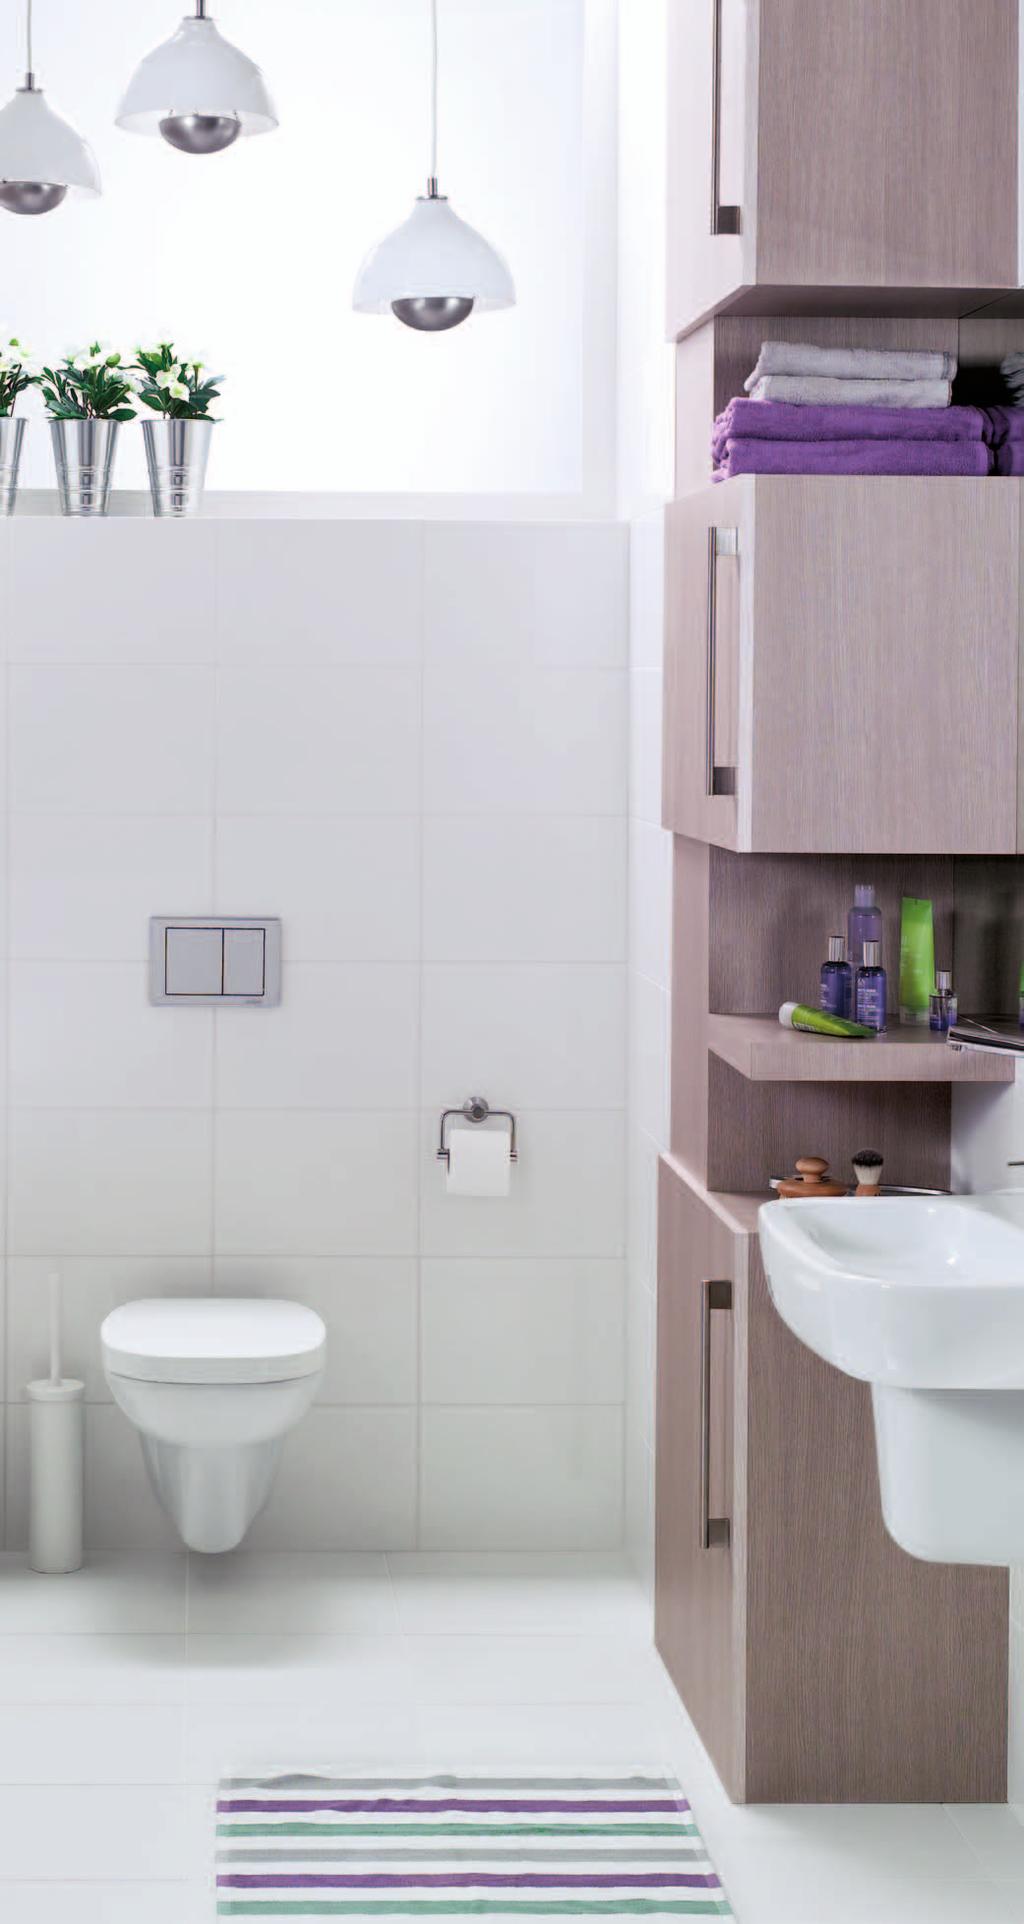 Sanitair van SaniNobel In badkamer en toilet is gekozen voor de badkamerserie